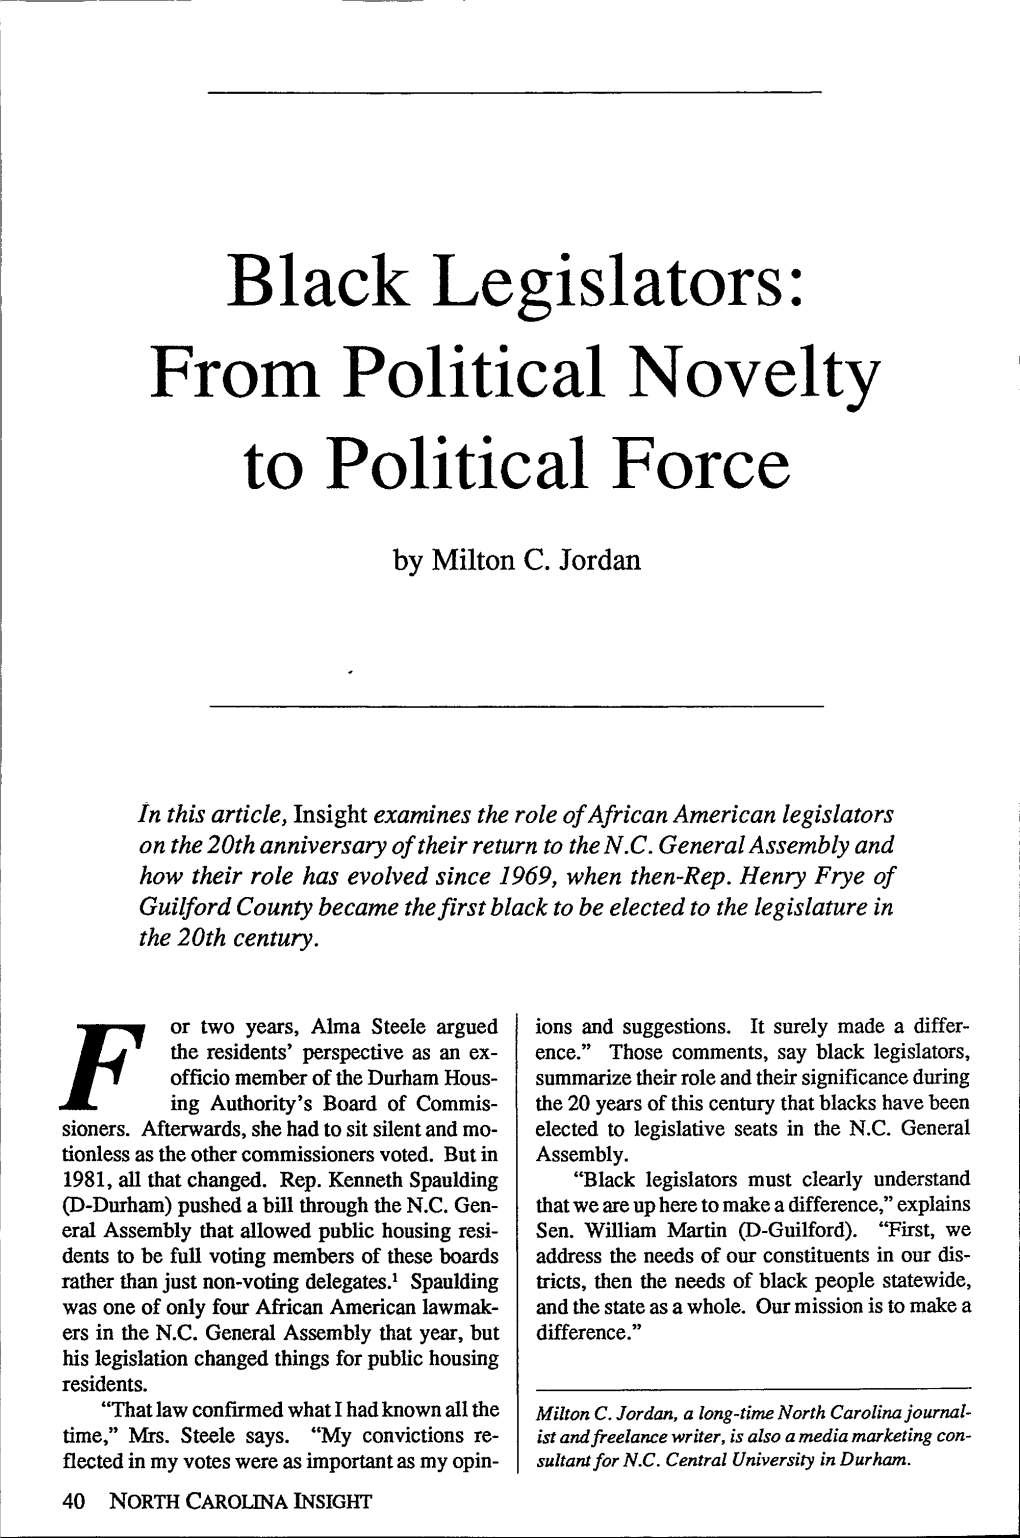 Black Legislators: from Political Novelty to Political Force